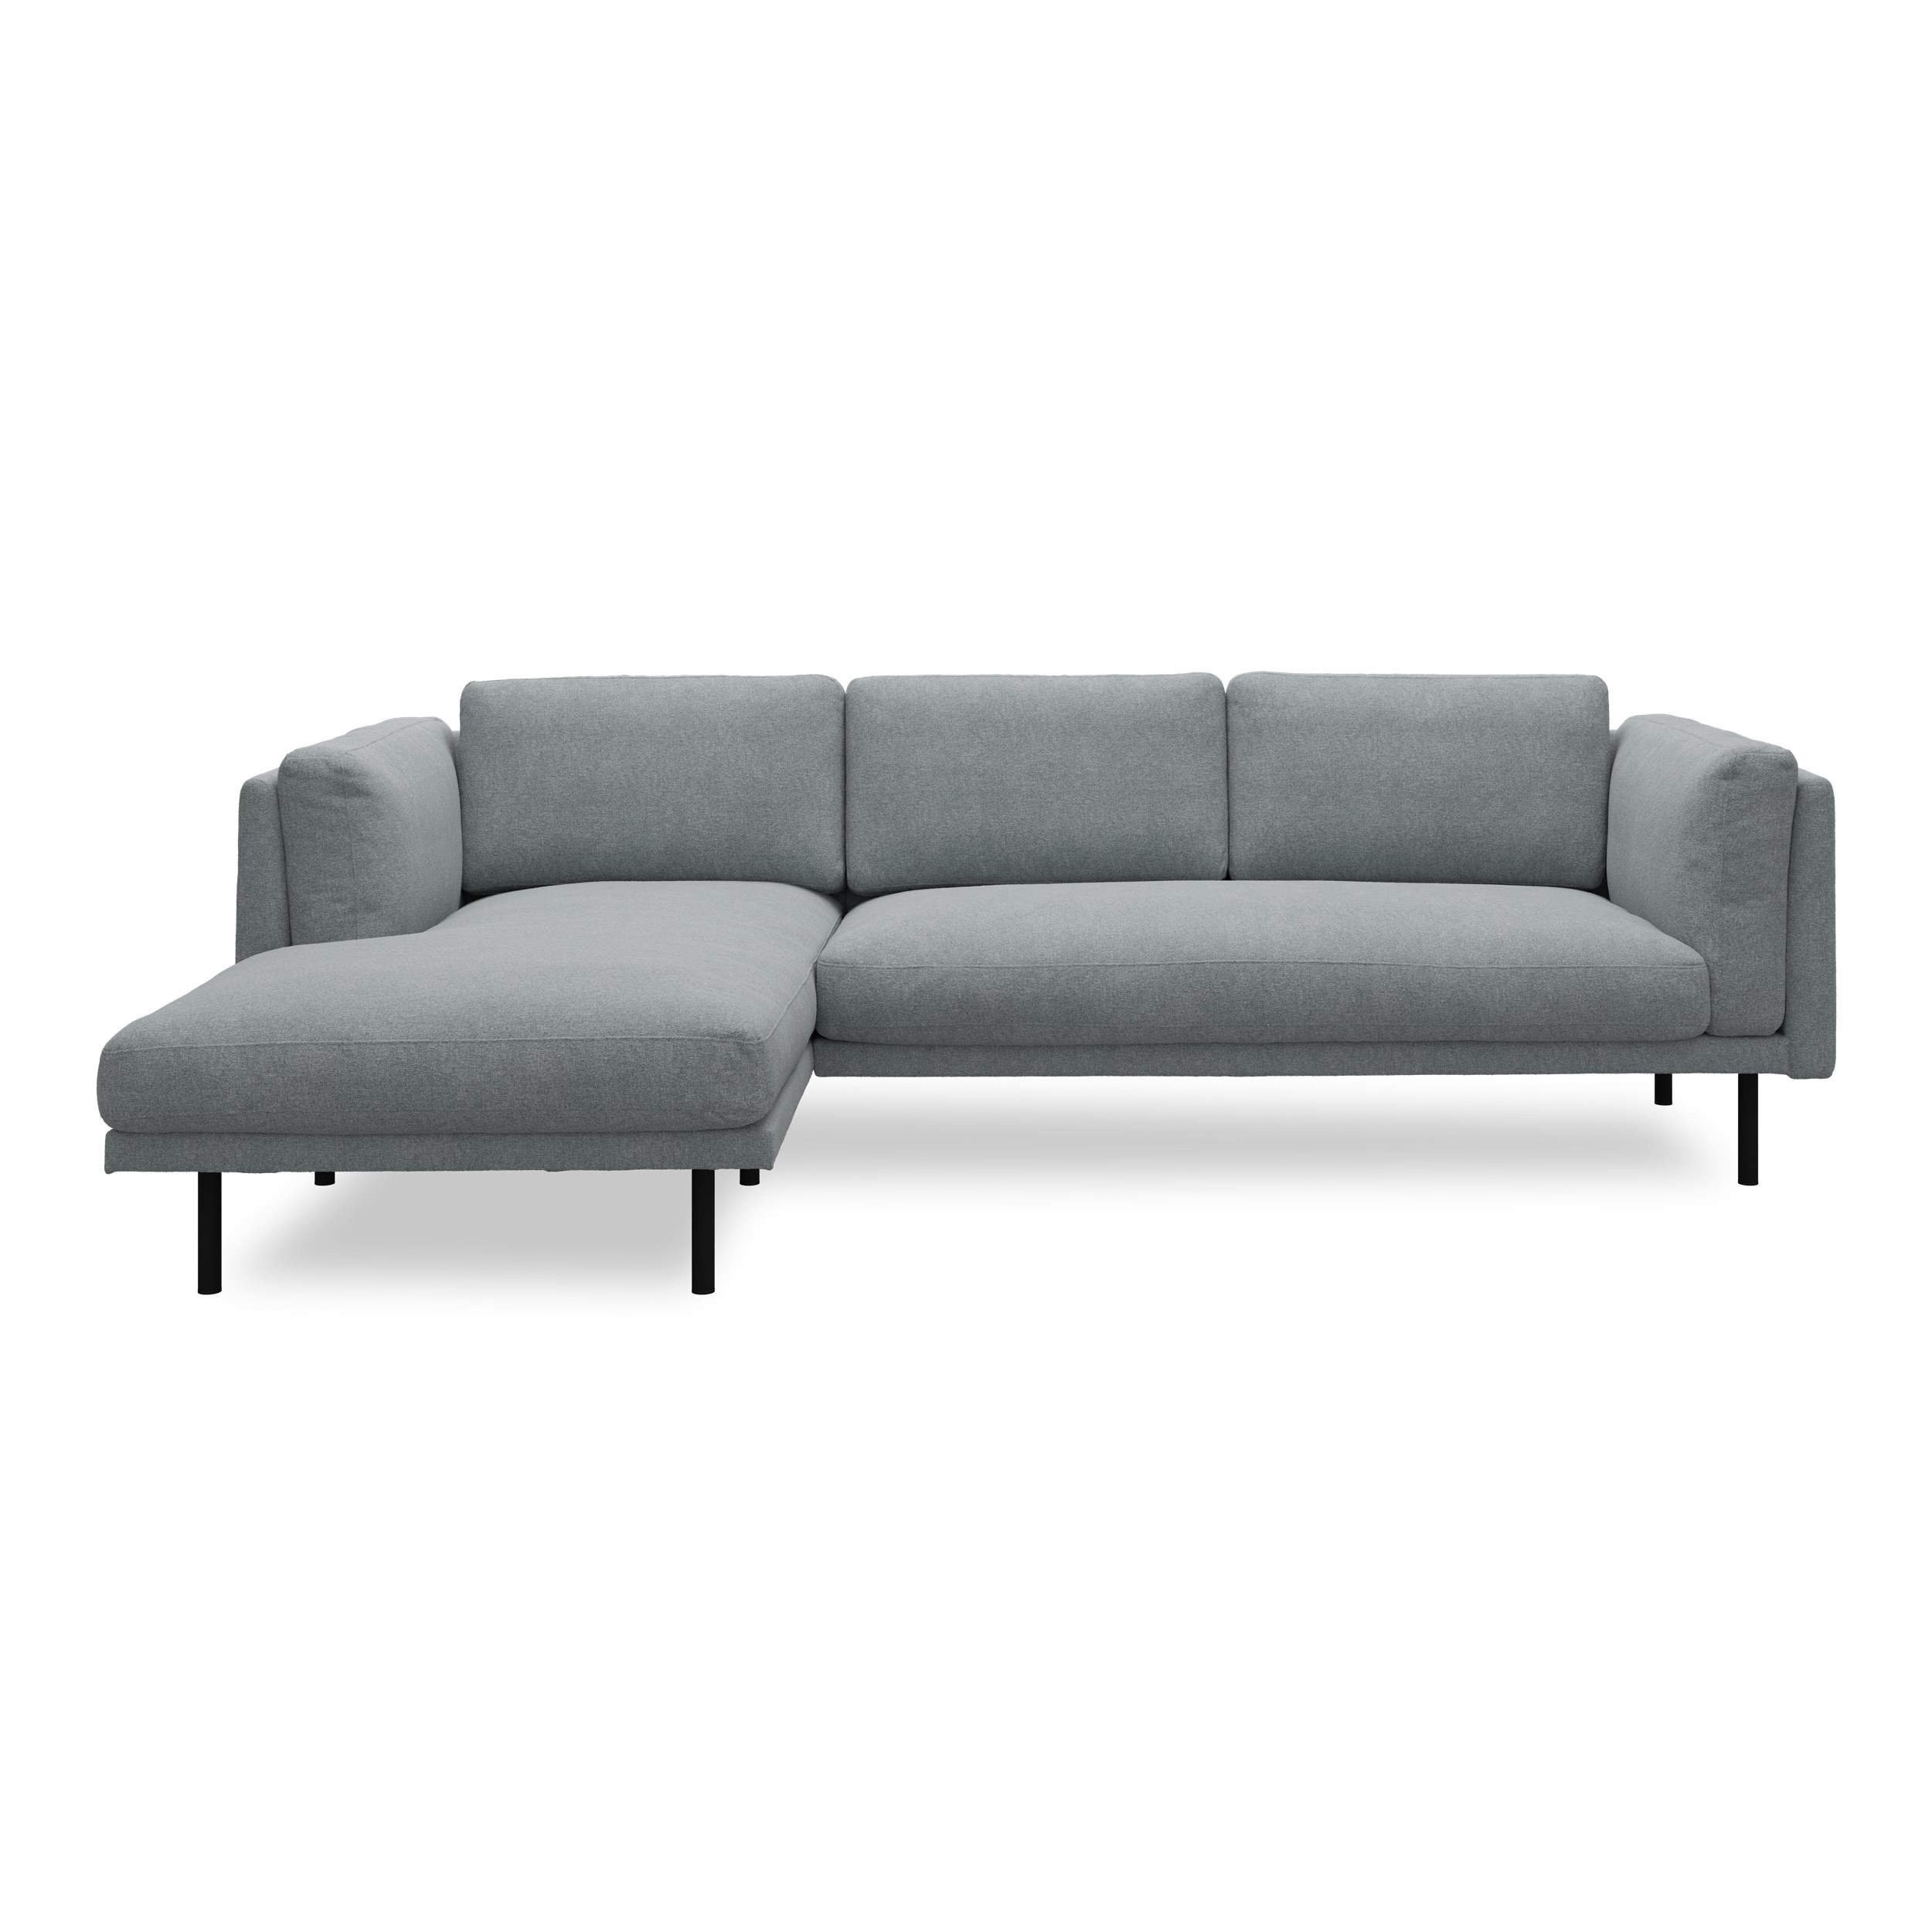 Nebel vänstervänd soffa med schäslong - Soil 158 Niagara textil och svart pulverlackerad metall